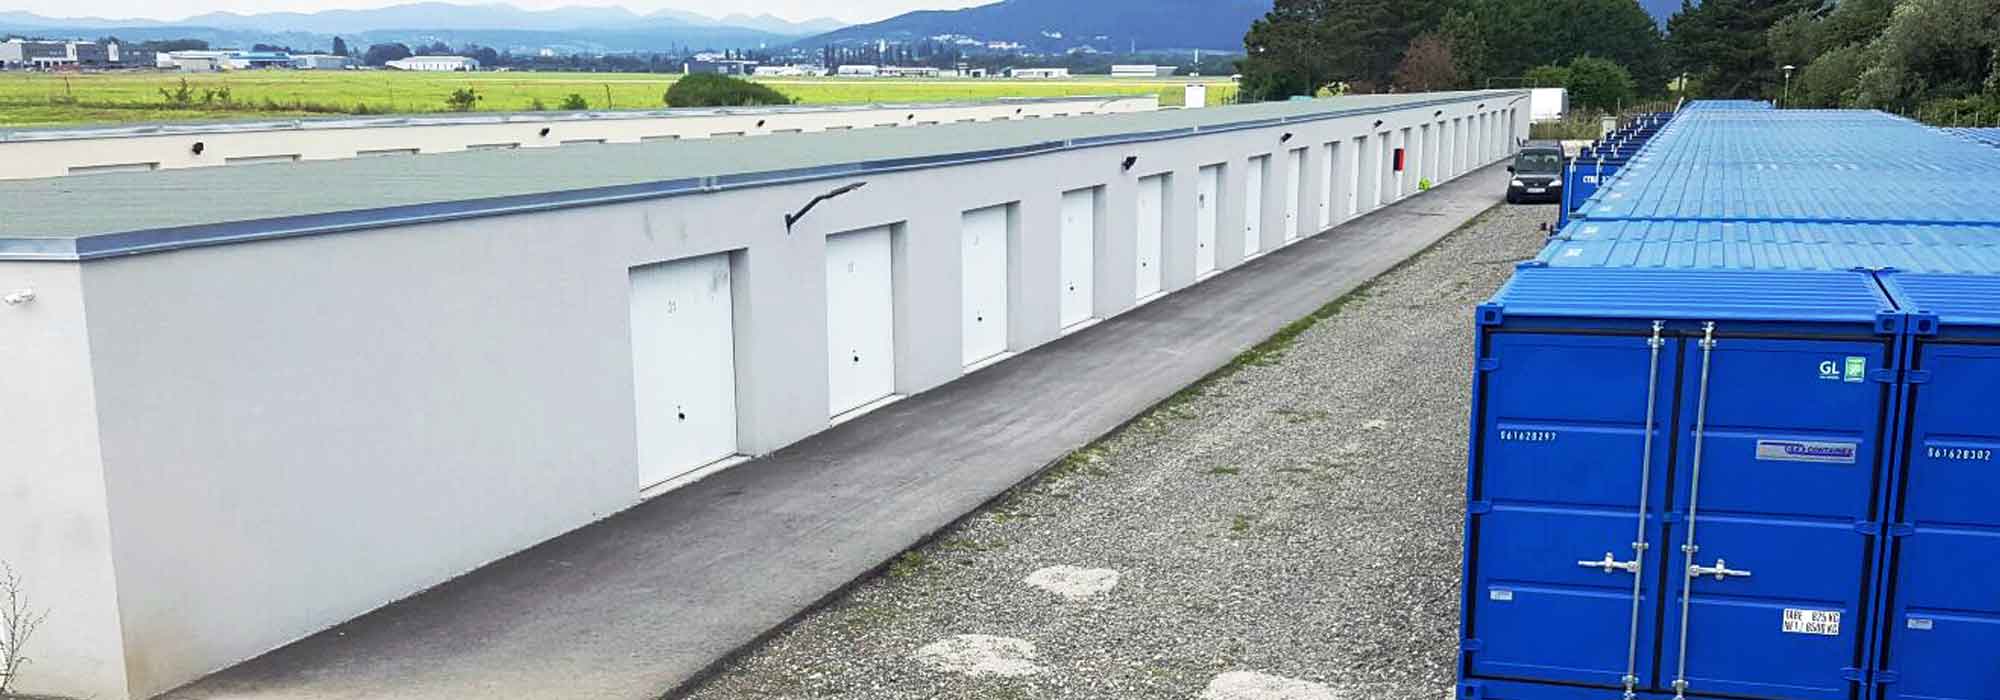 Garagen, Einstellplätze, Container in Niederösterreich zu vermieten